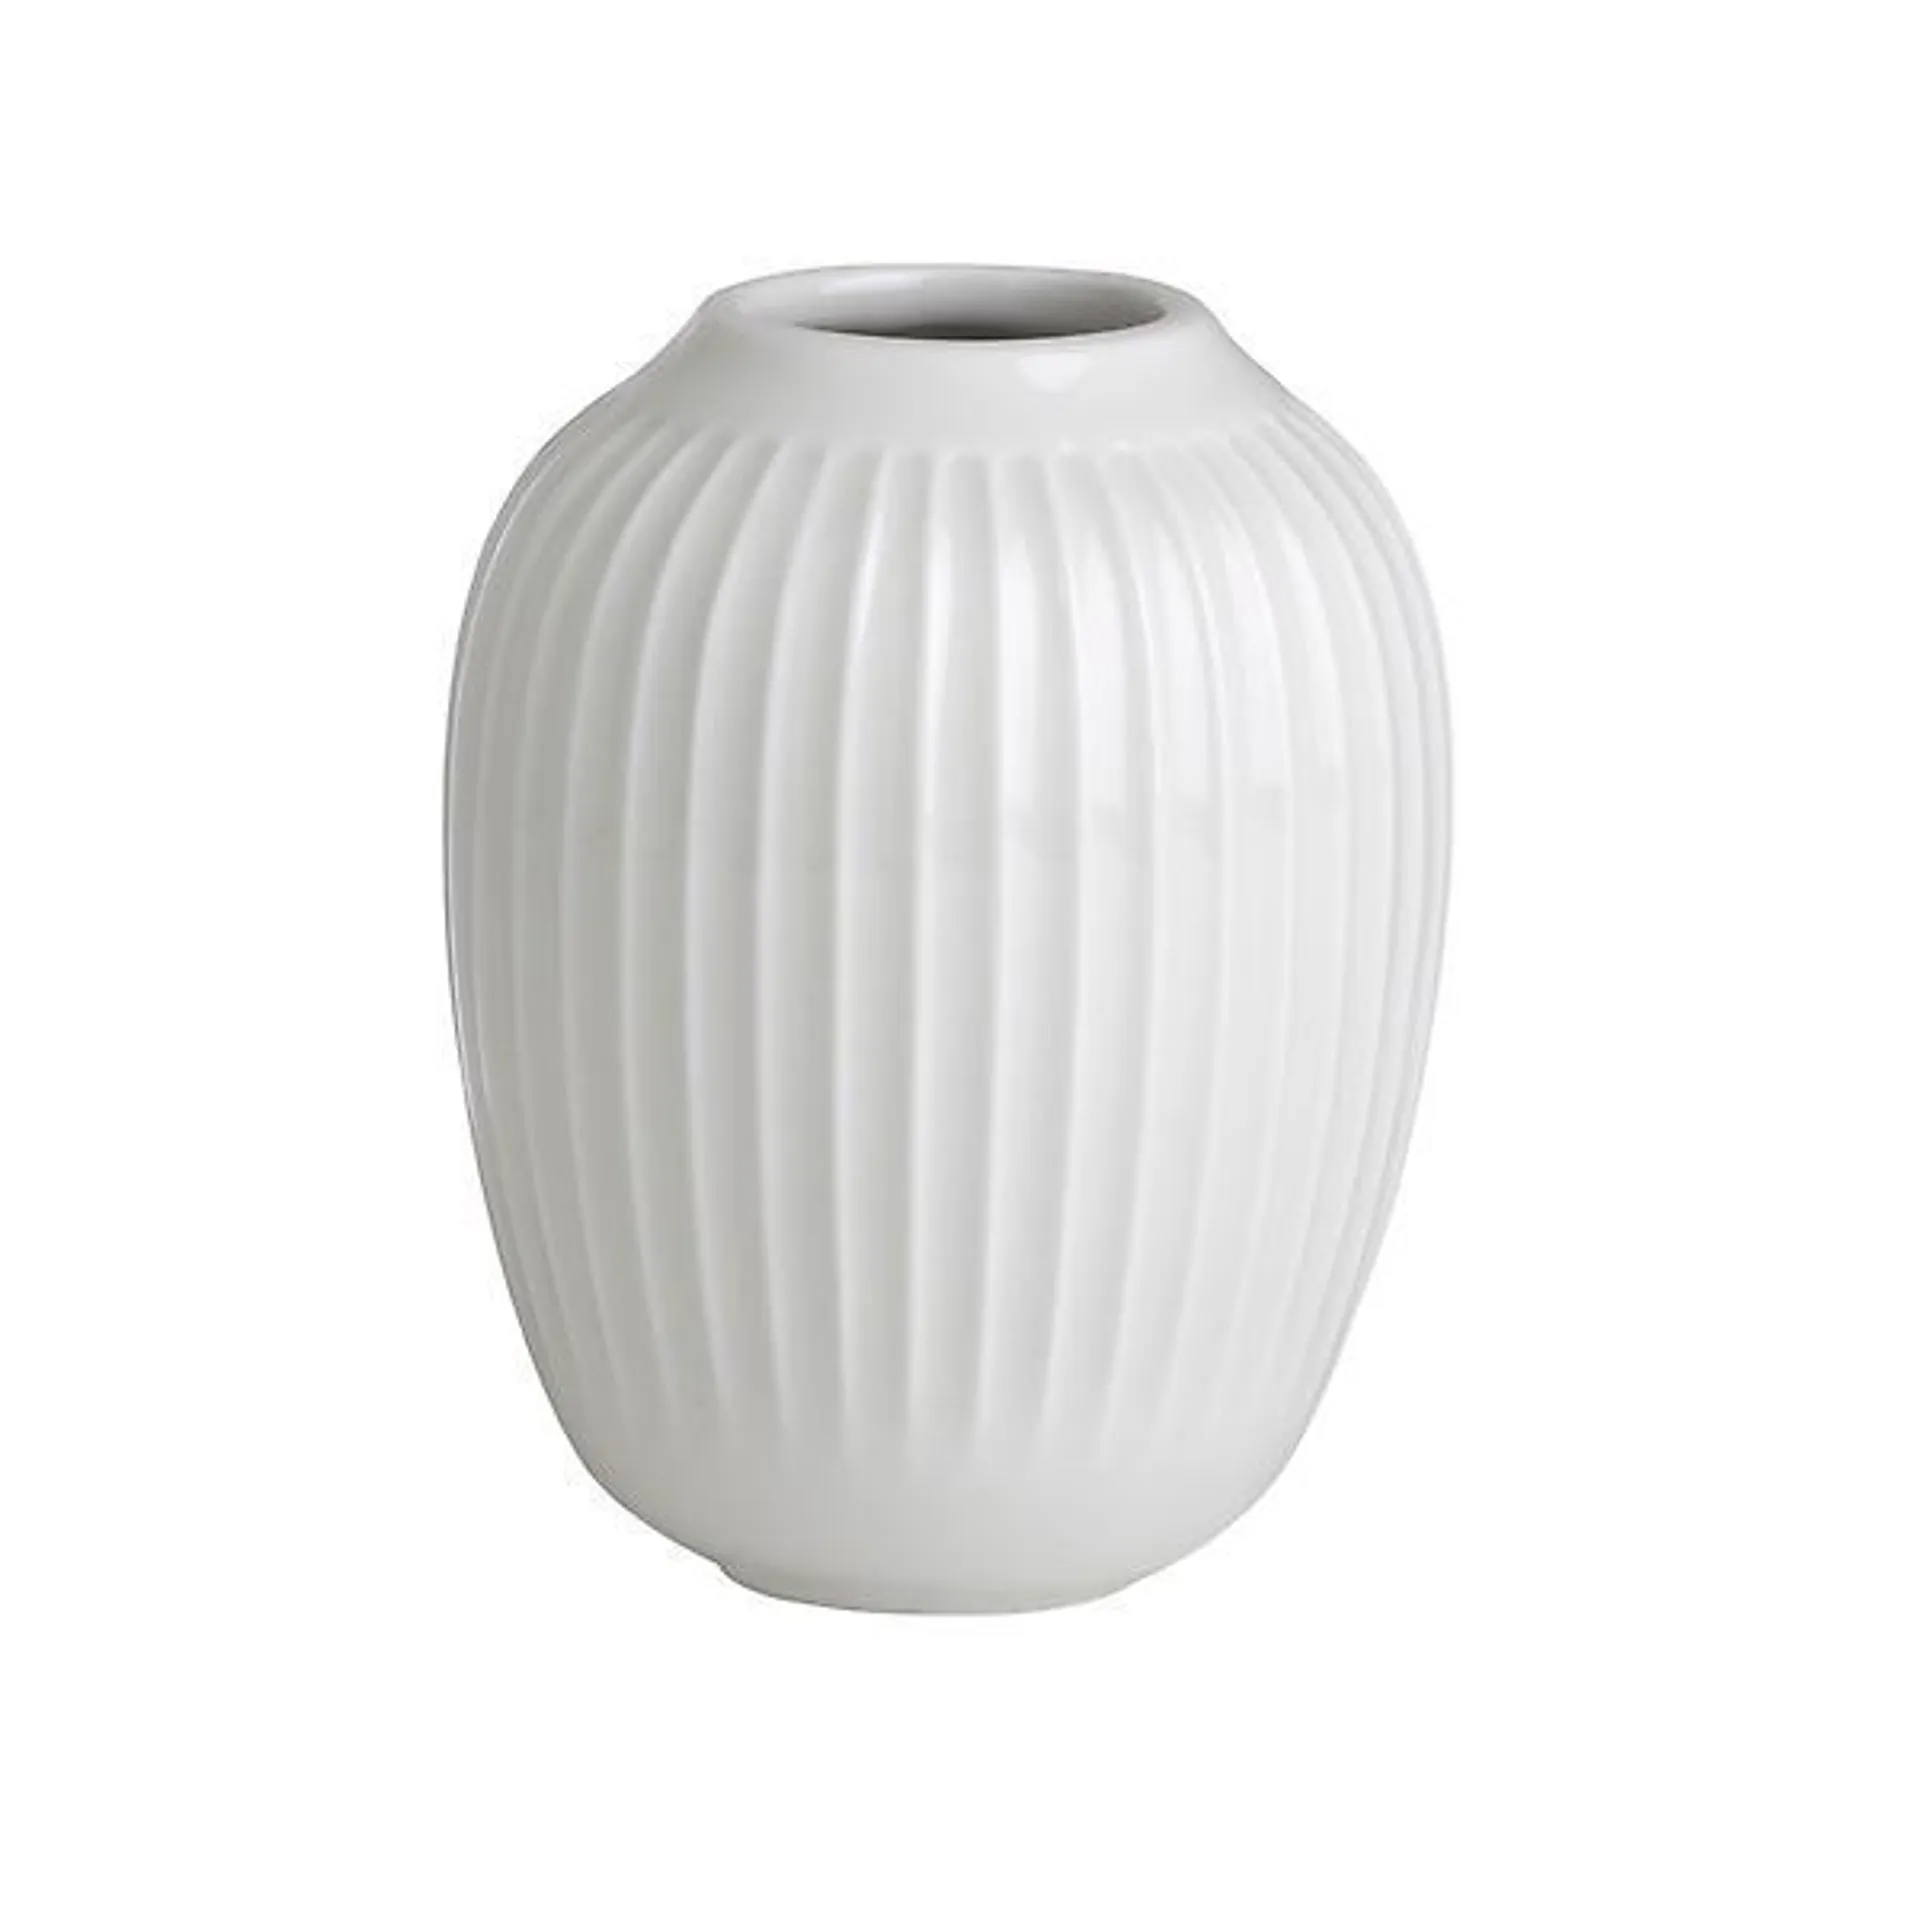 Kahler Hammershoi Decorative Vase White